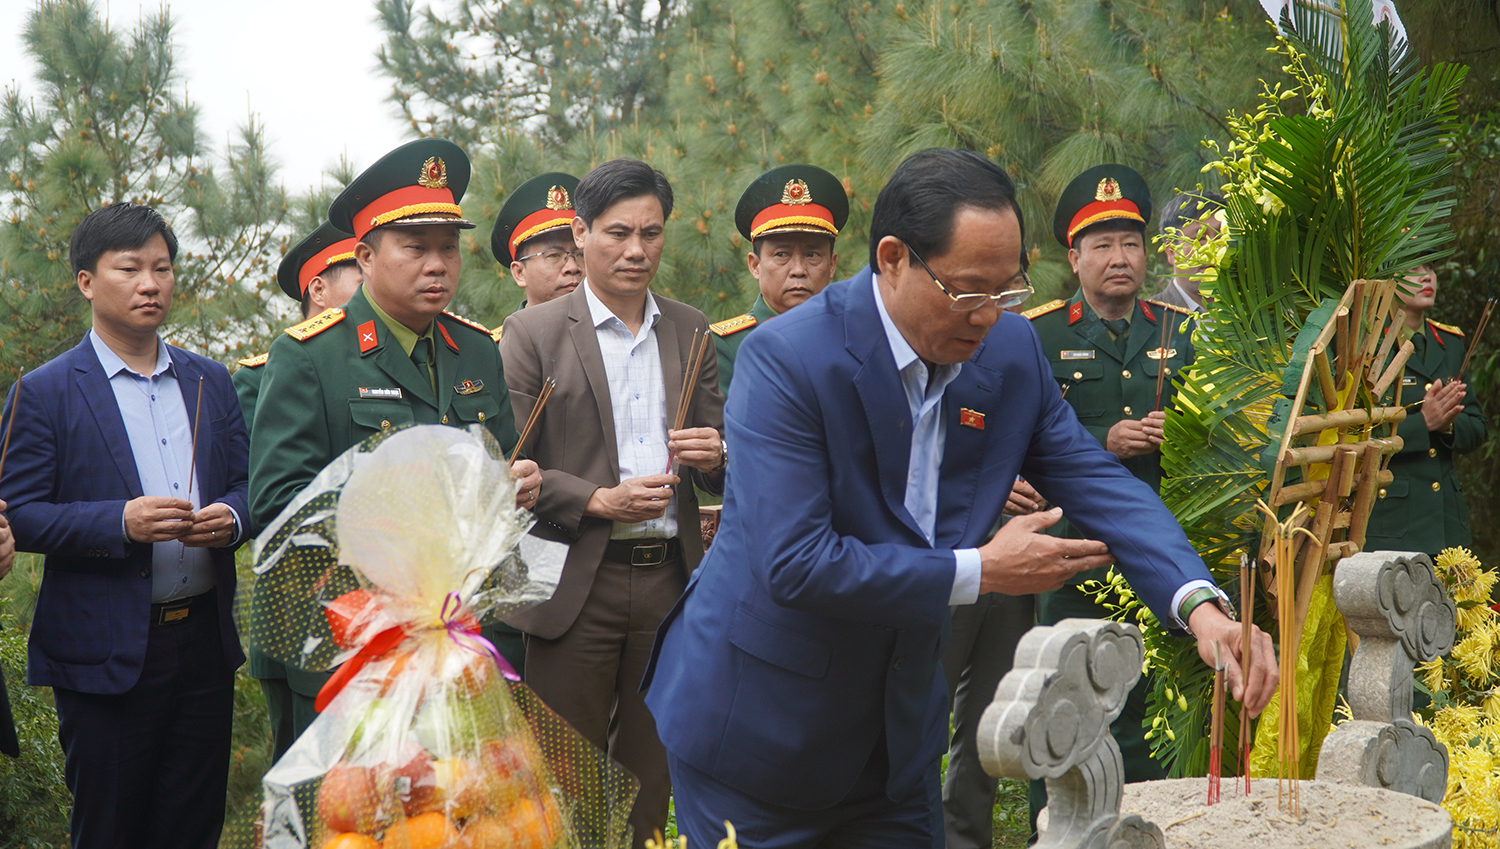 Đồng chí Thượng tướng, Phó Chủ tịch Quốc hội Trần Quang Phương dâng hương viếng Đại tướng Võ Nguyên Giáp